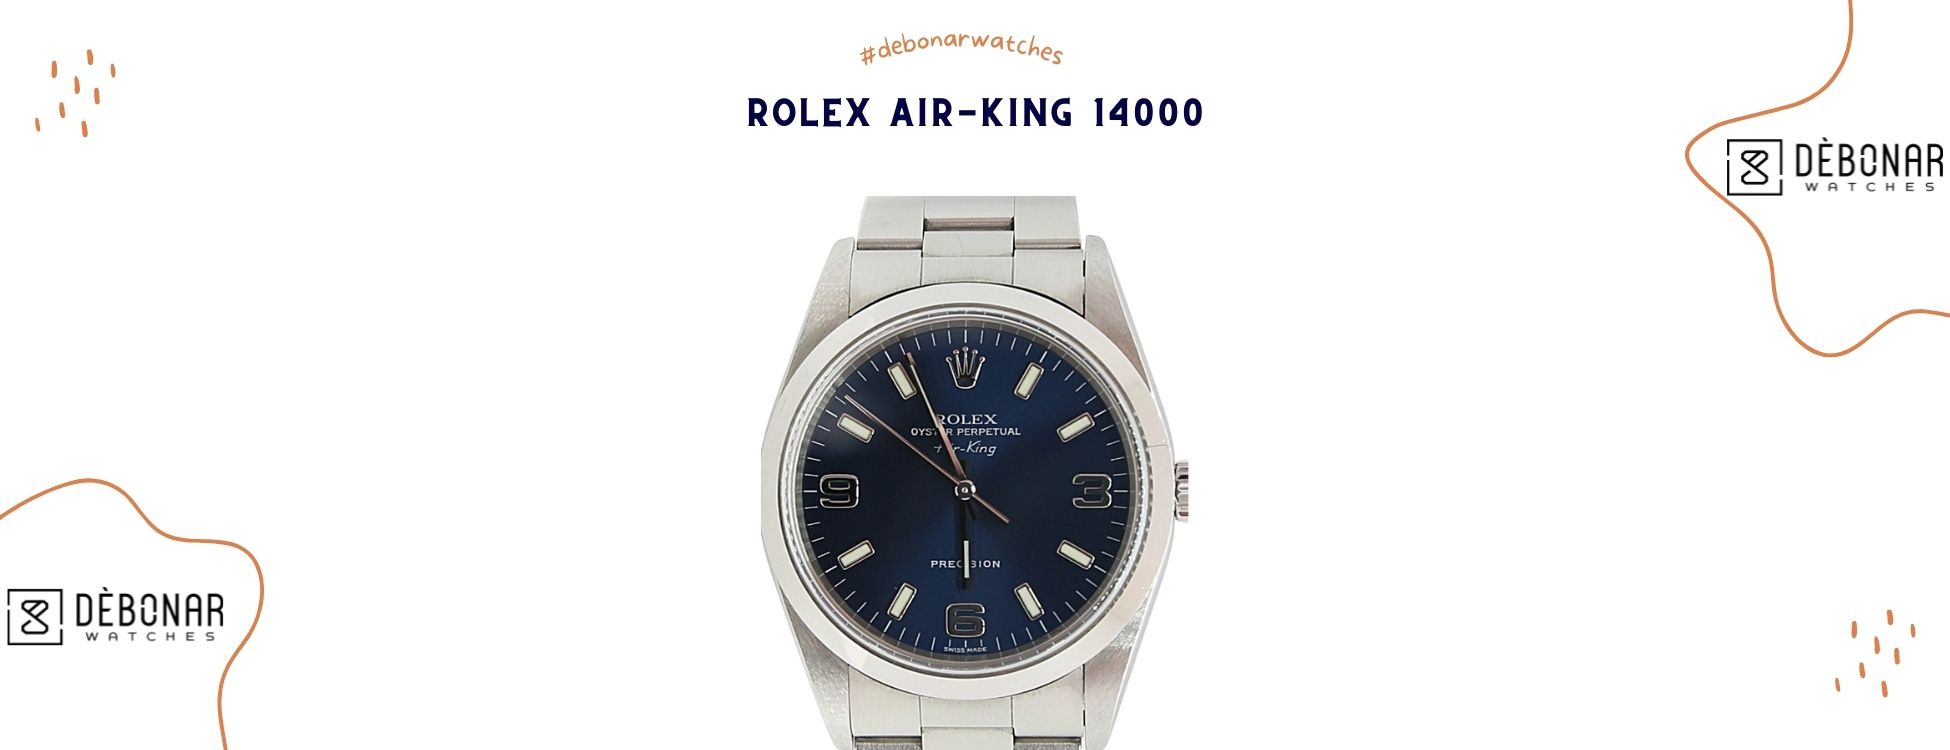 Rolex Air-King 14000